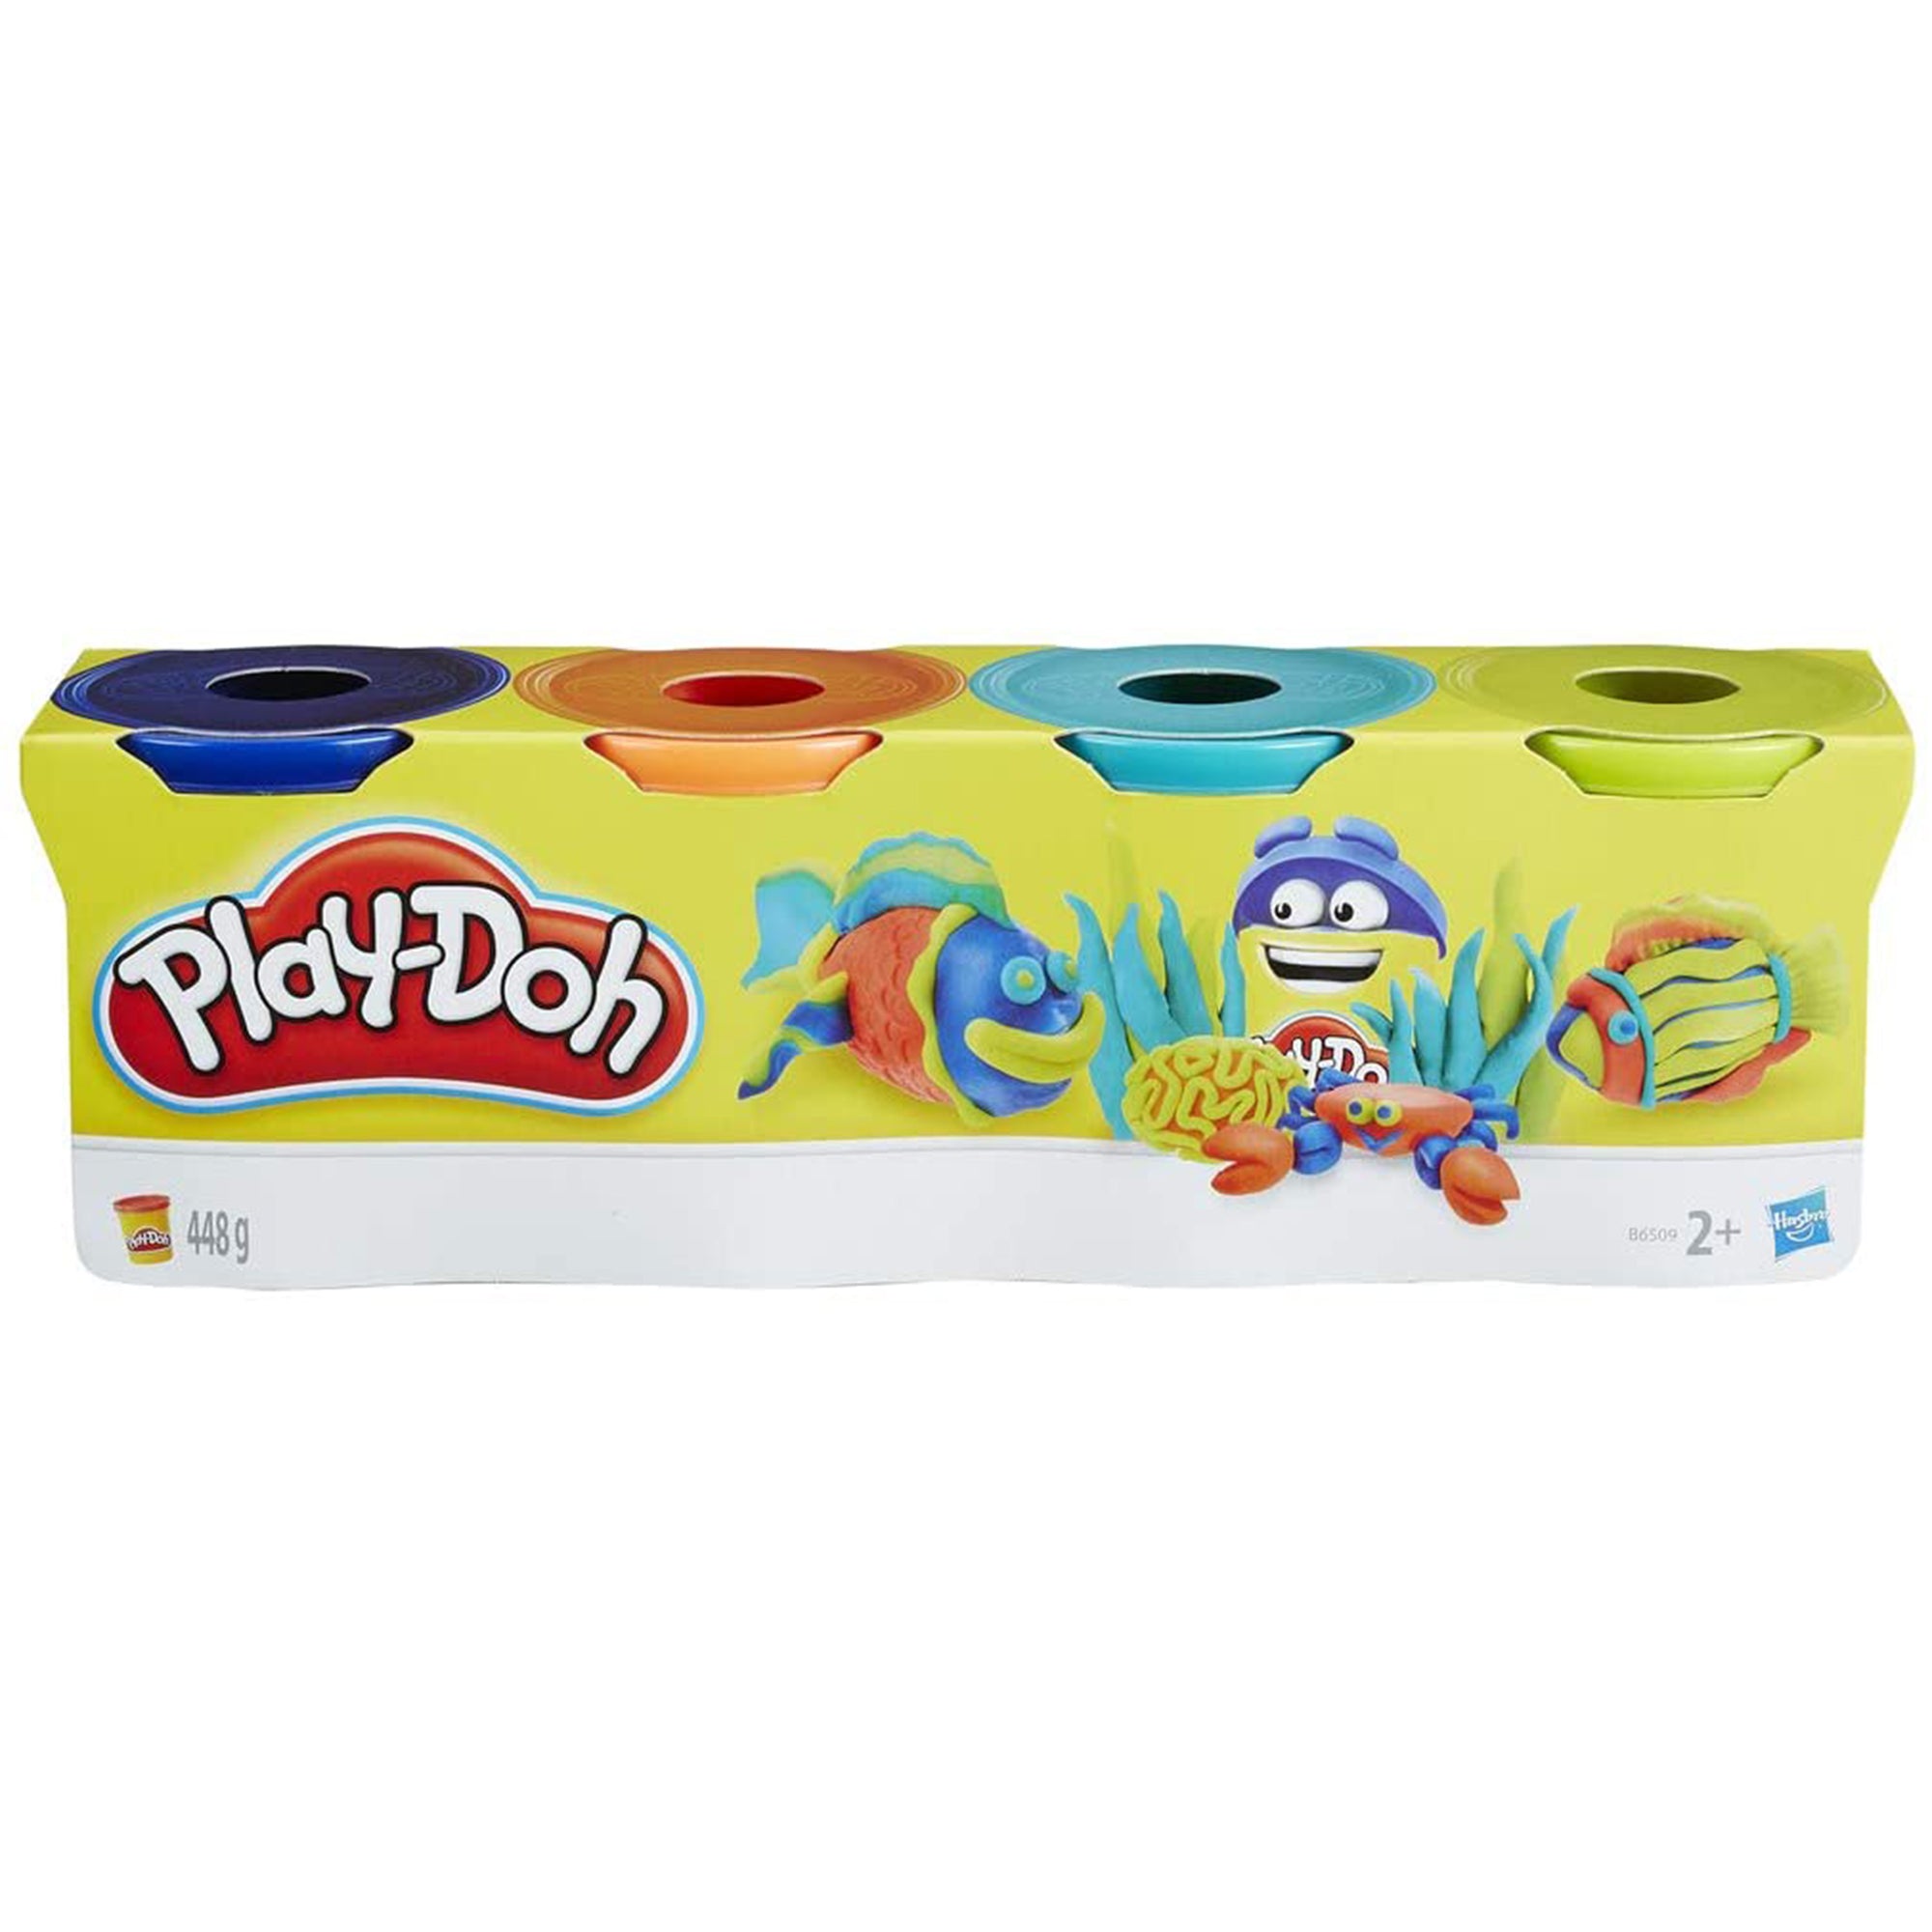 Plastilina Play-Doh per bambini vasetto pasta modellante colorata 2741